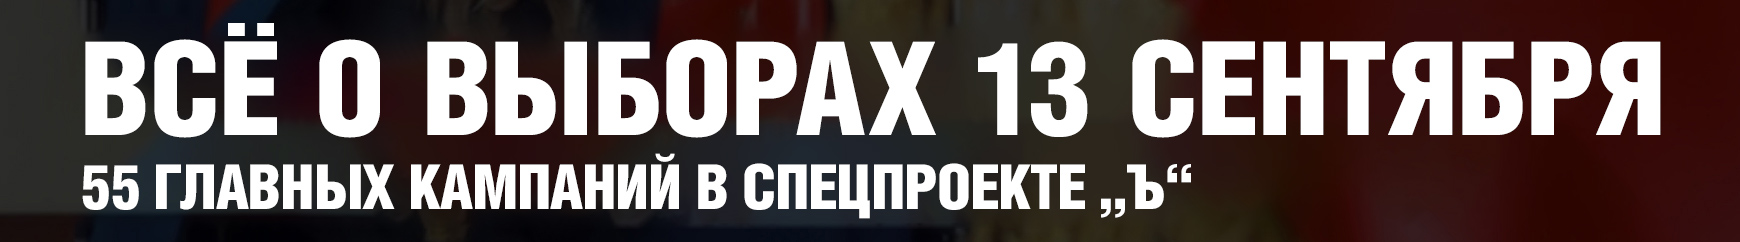 Кассационный суд восстановил регистрацию шестерых кандидатов КПРФ в ульяновскую гордуму